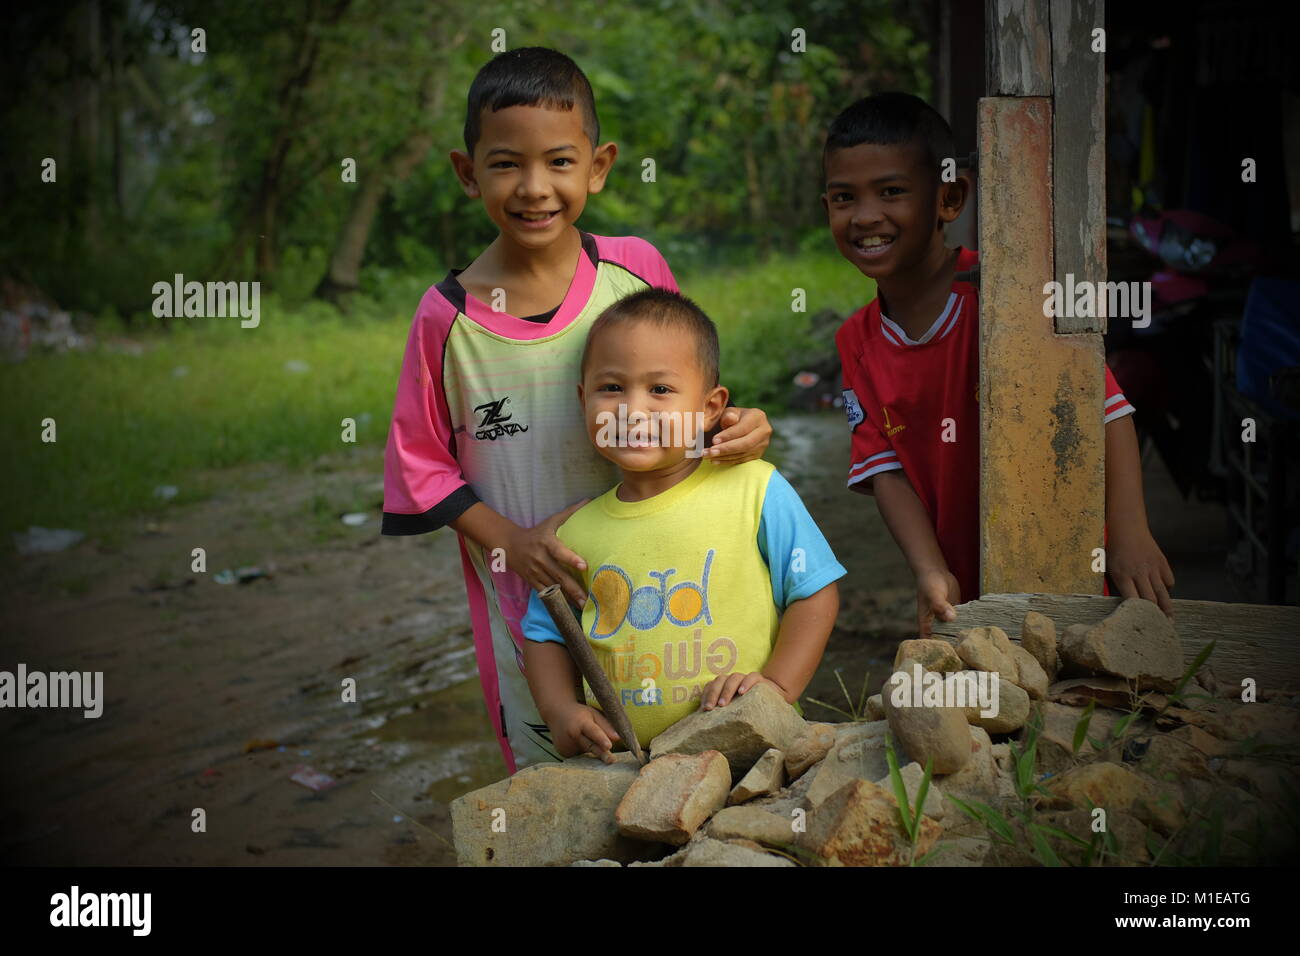 Three boys in koh Yao Yai, a Thai island in the Andaman Sea. 20-Jan-2018 Stock Photo